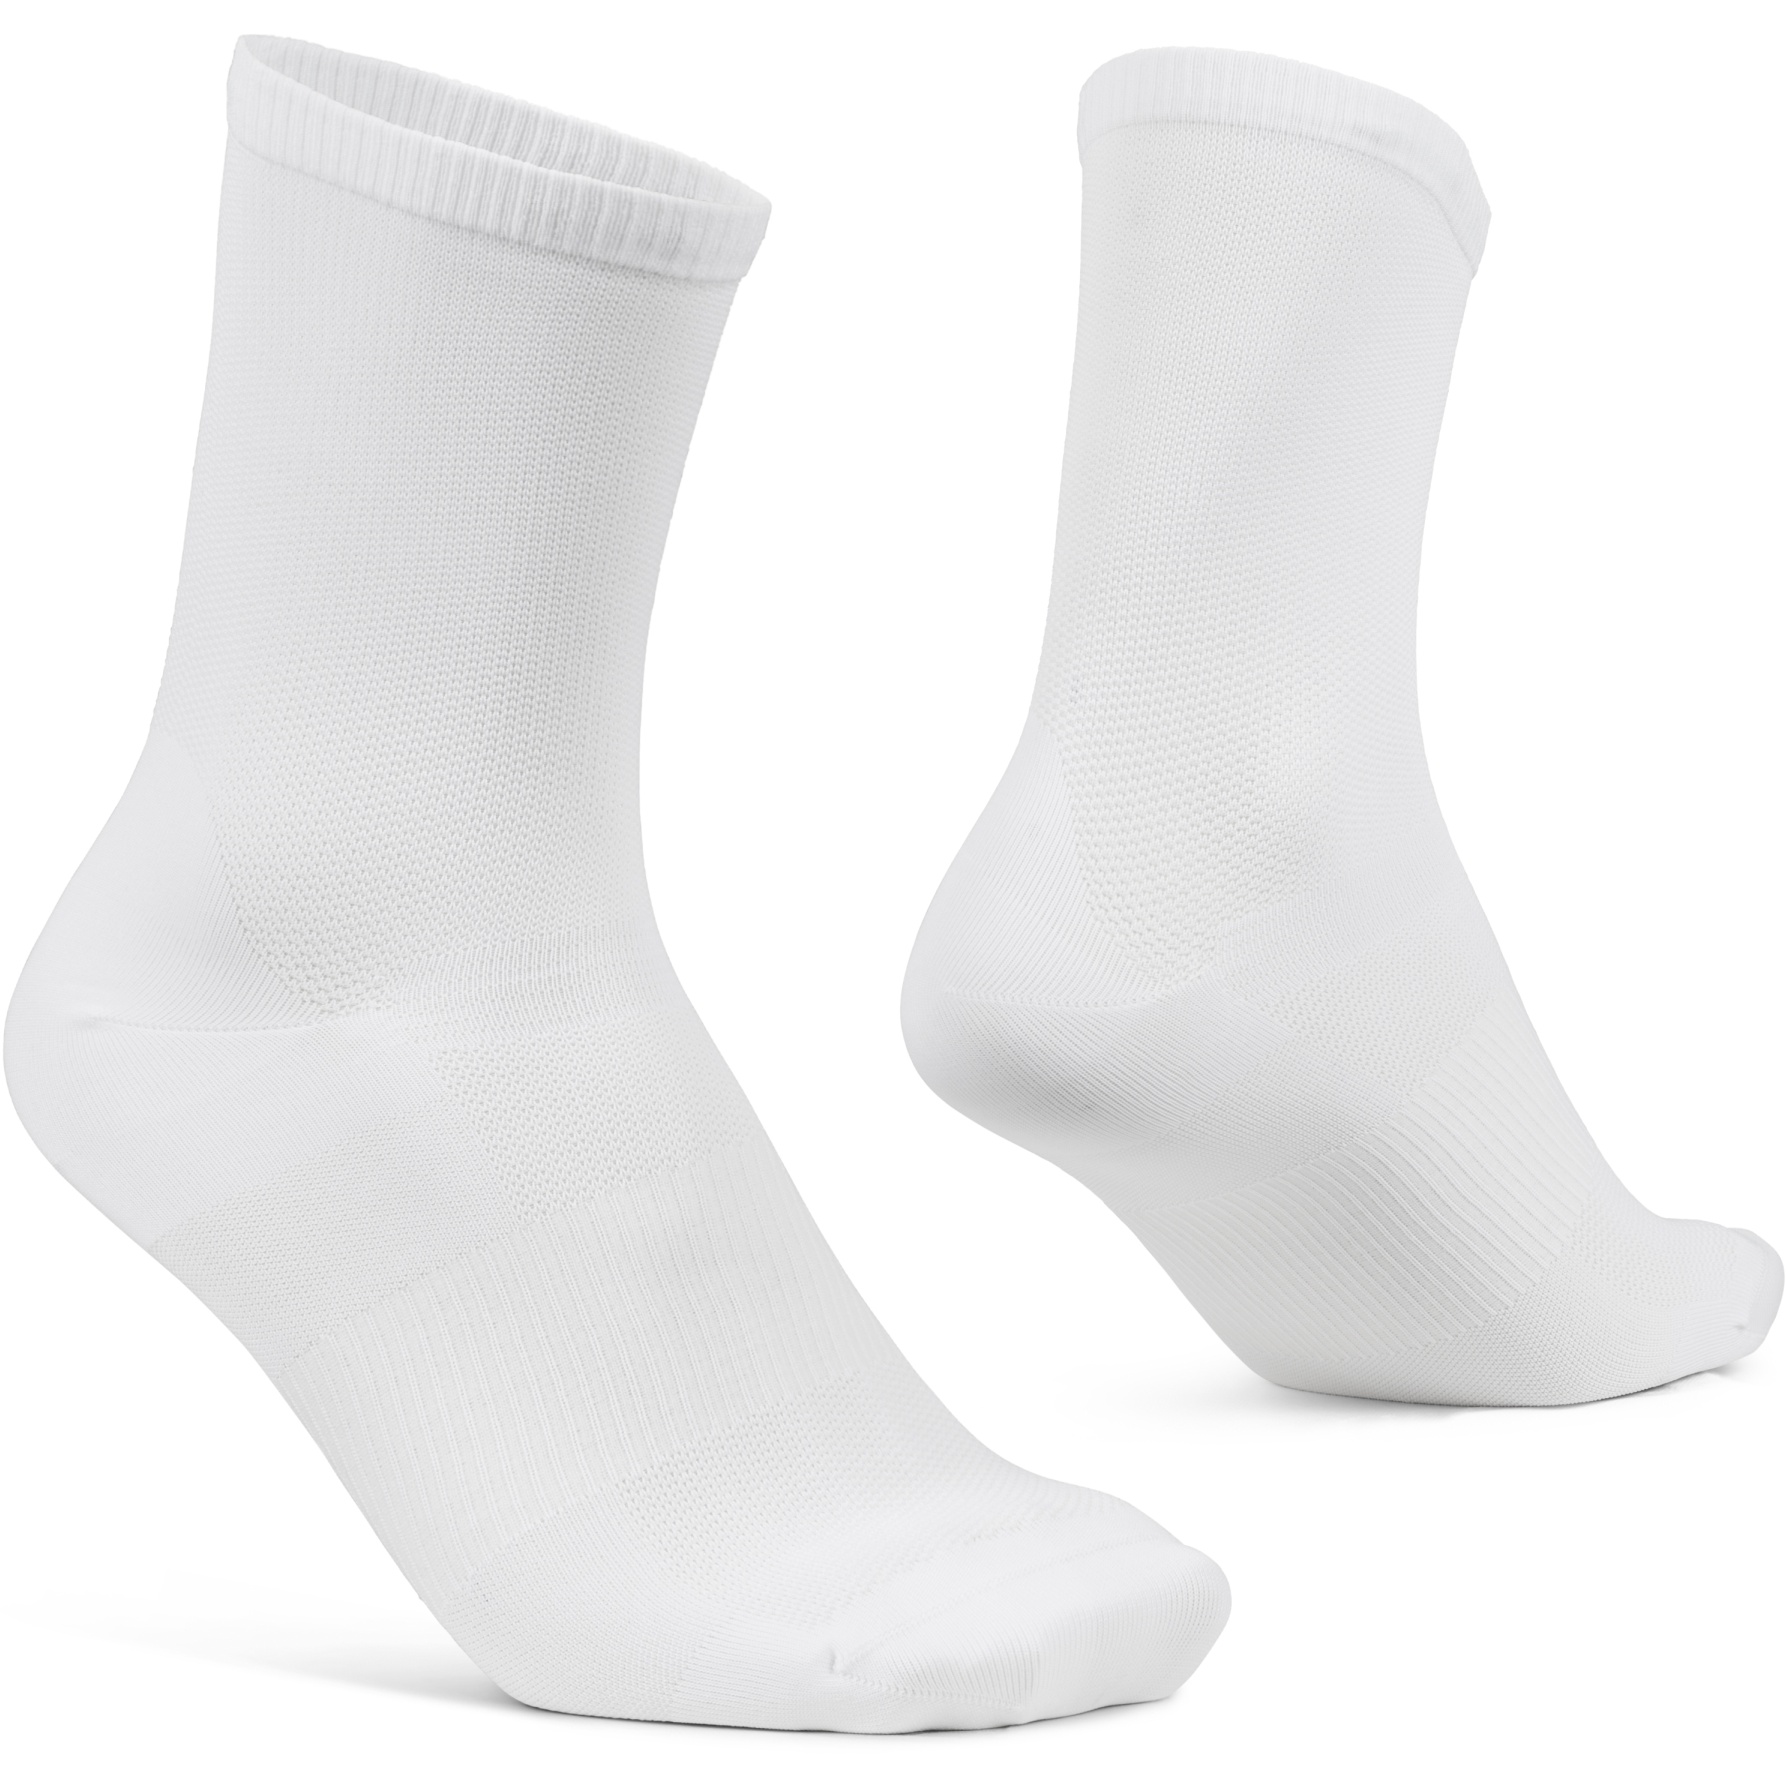 Produktbild von GripGrab Lightweight Airflow Socken - Weiß